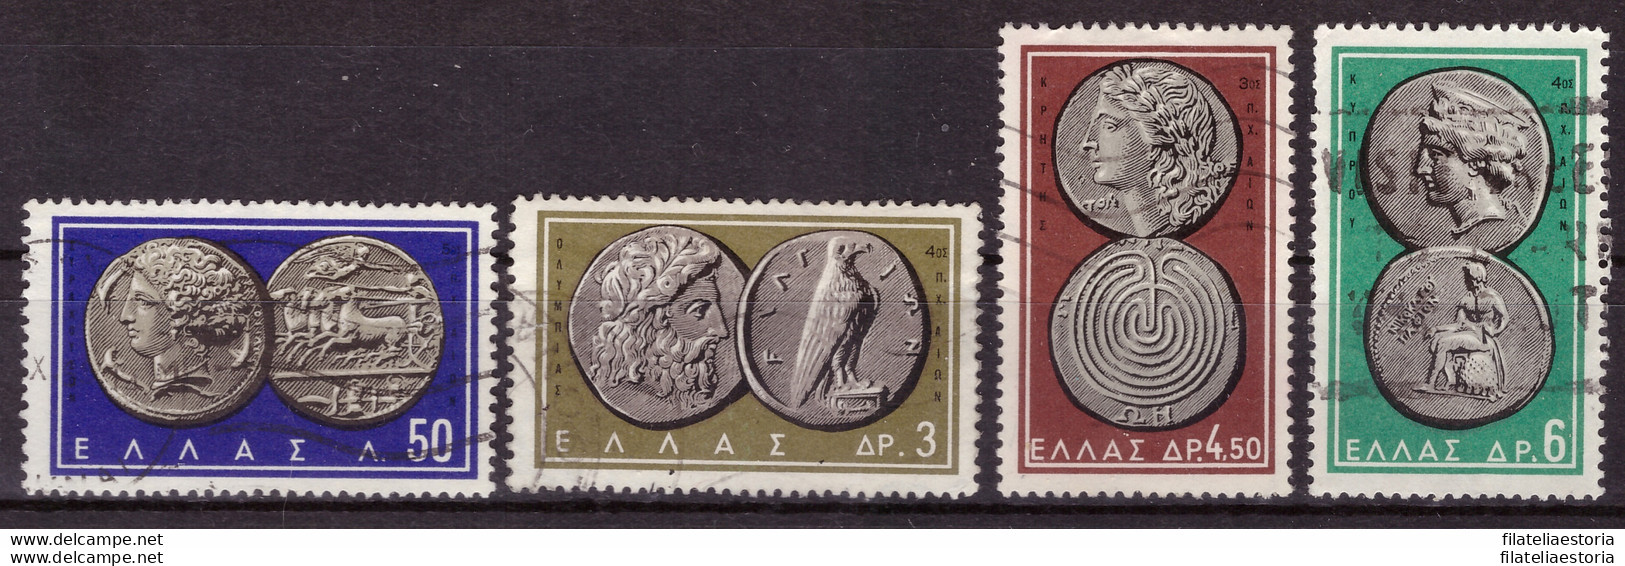 Grèce 1963 - Oblitéré - Monnaie - Michel Nr. 807 811 813-814 (gre1005) - Usados